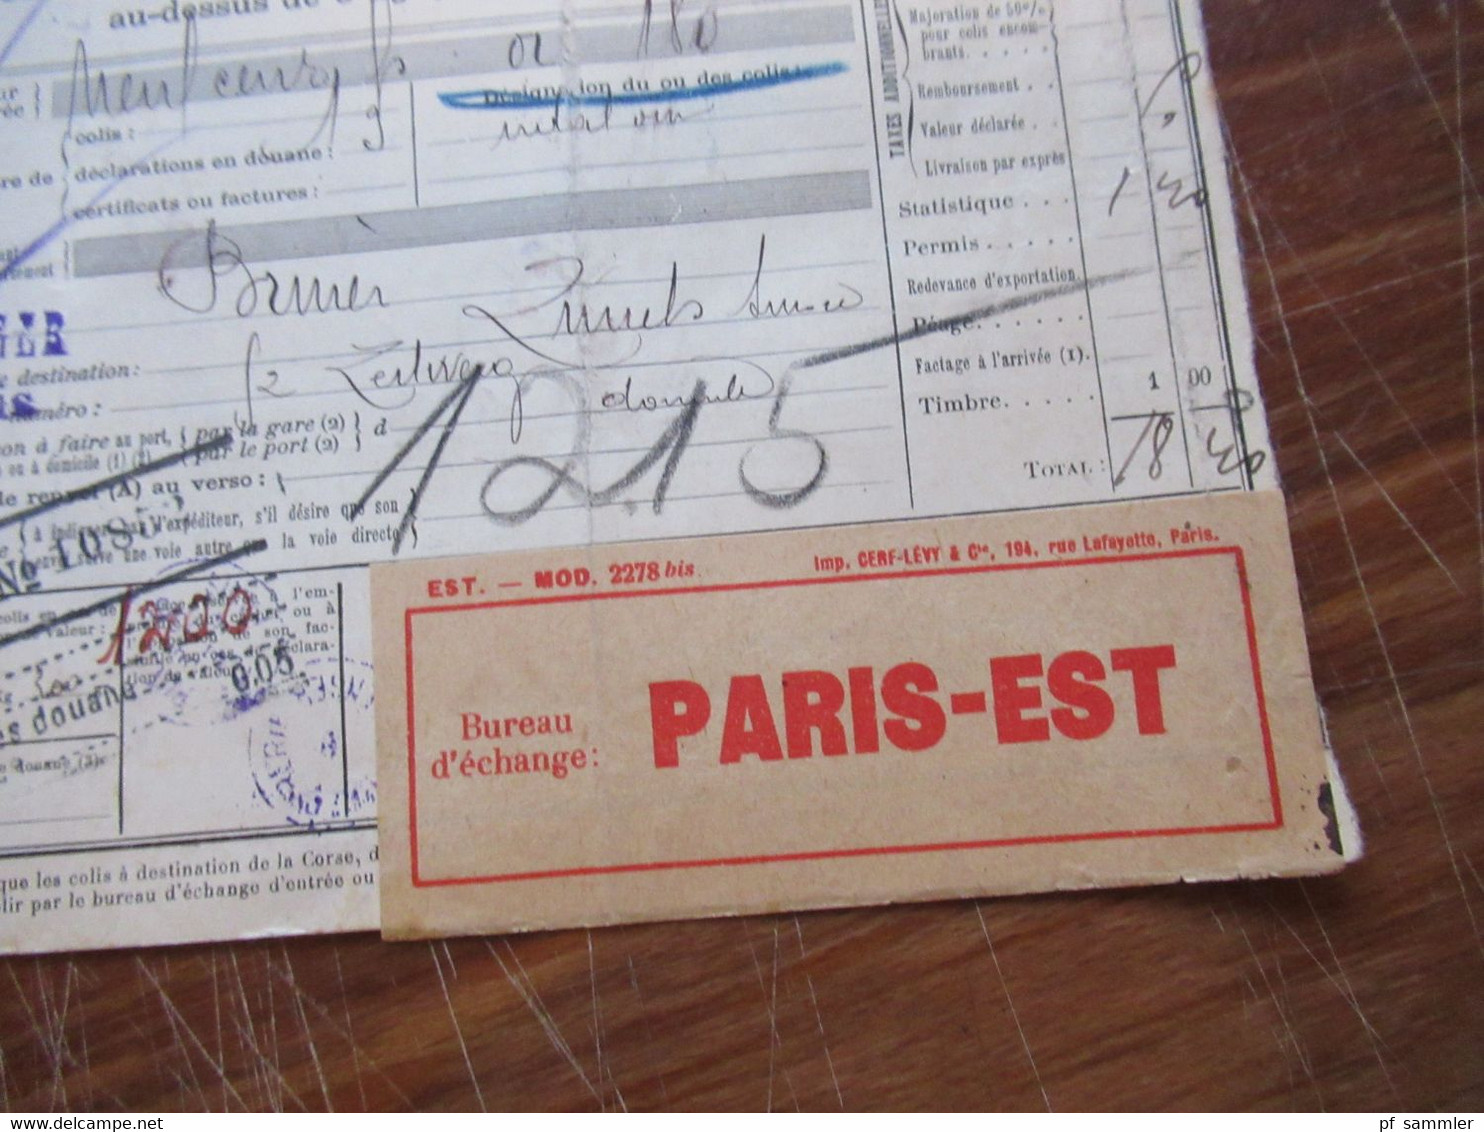 Frankreich 1927 Auslandspaketkarte Colis Postaux In Die Schweiz Valeur Declaree / Paris - Est Mit Vielen Stempeln!! - Covers & Documents